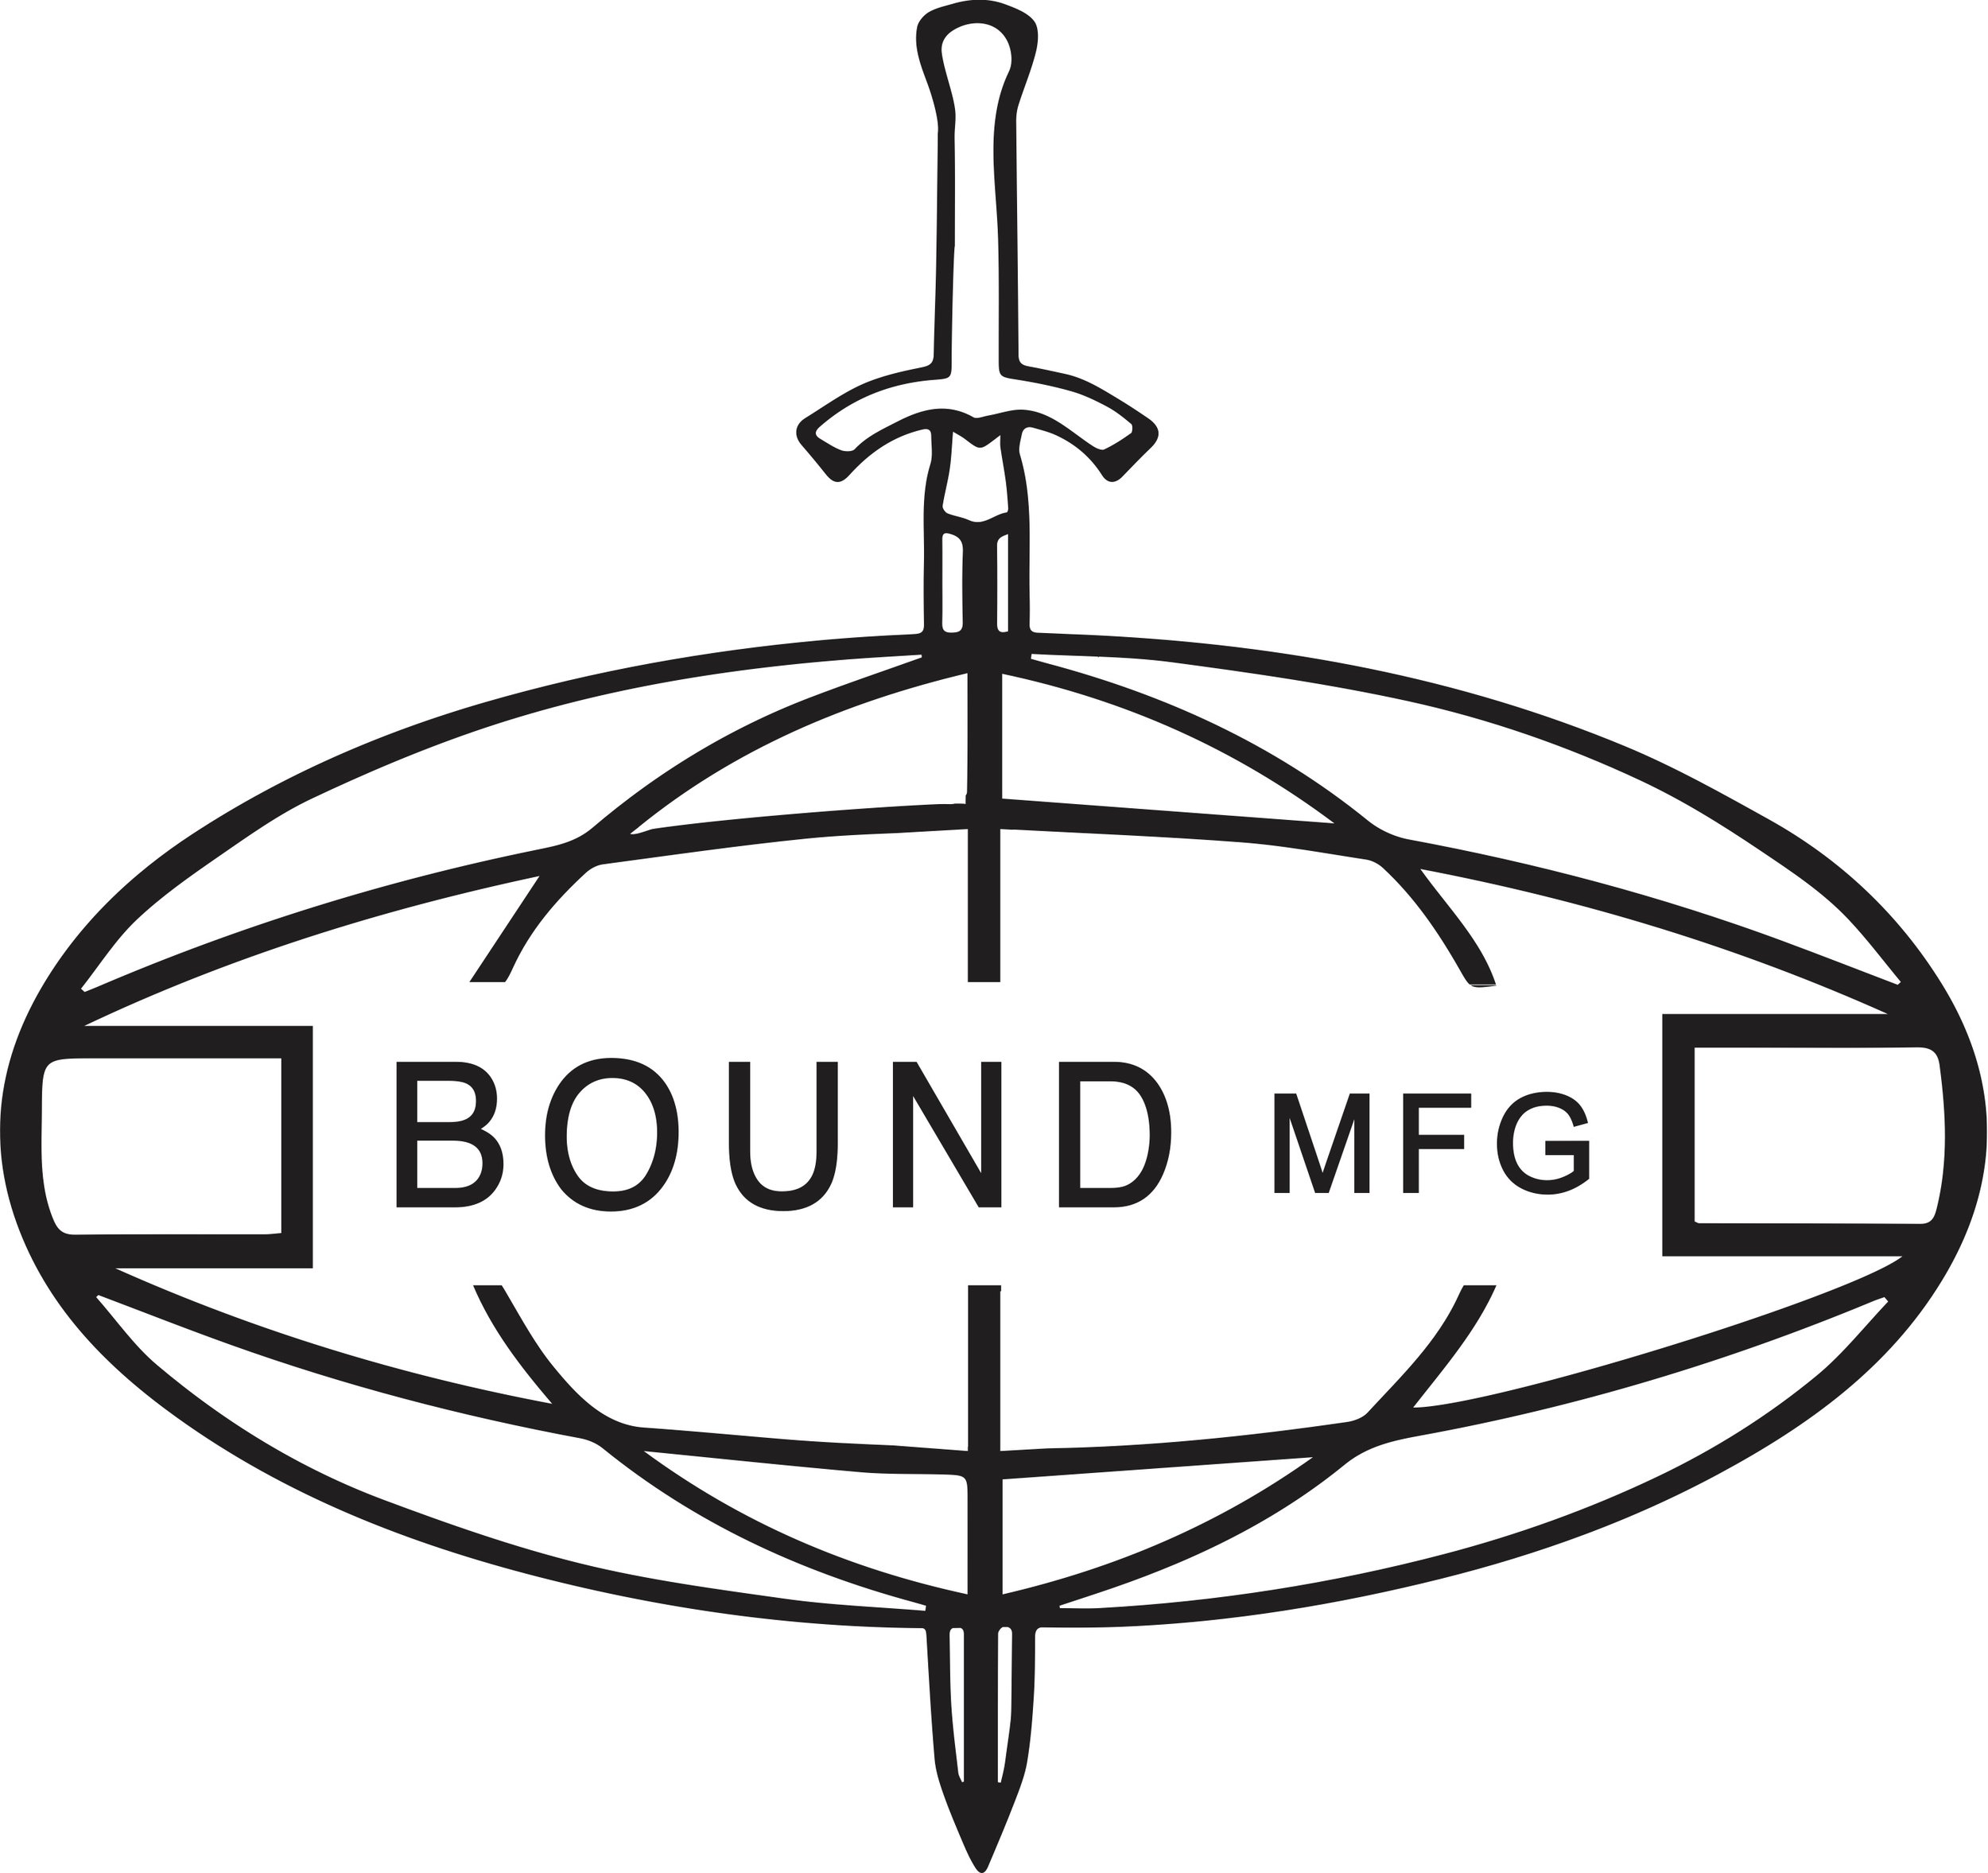 BOUND MFG       